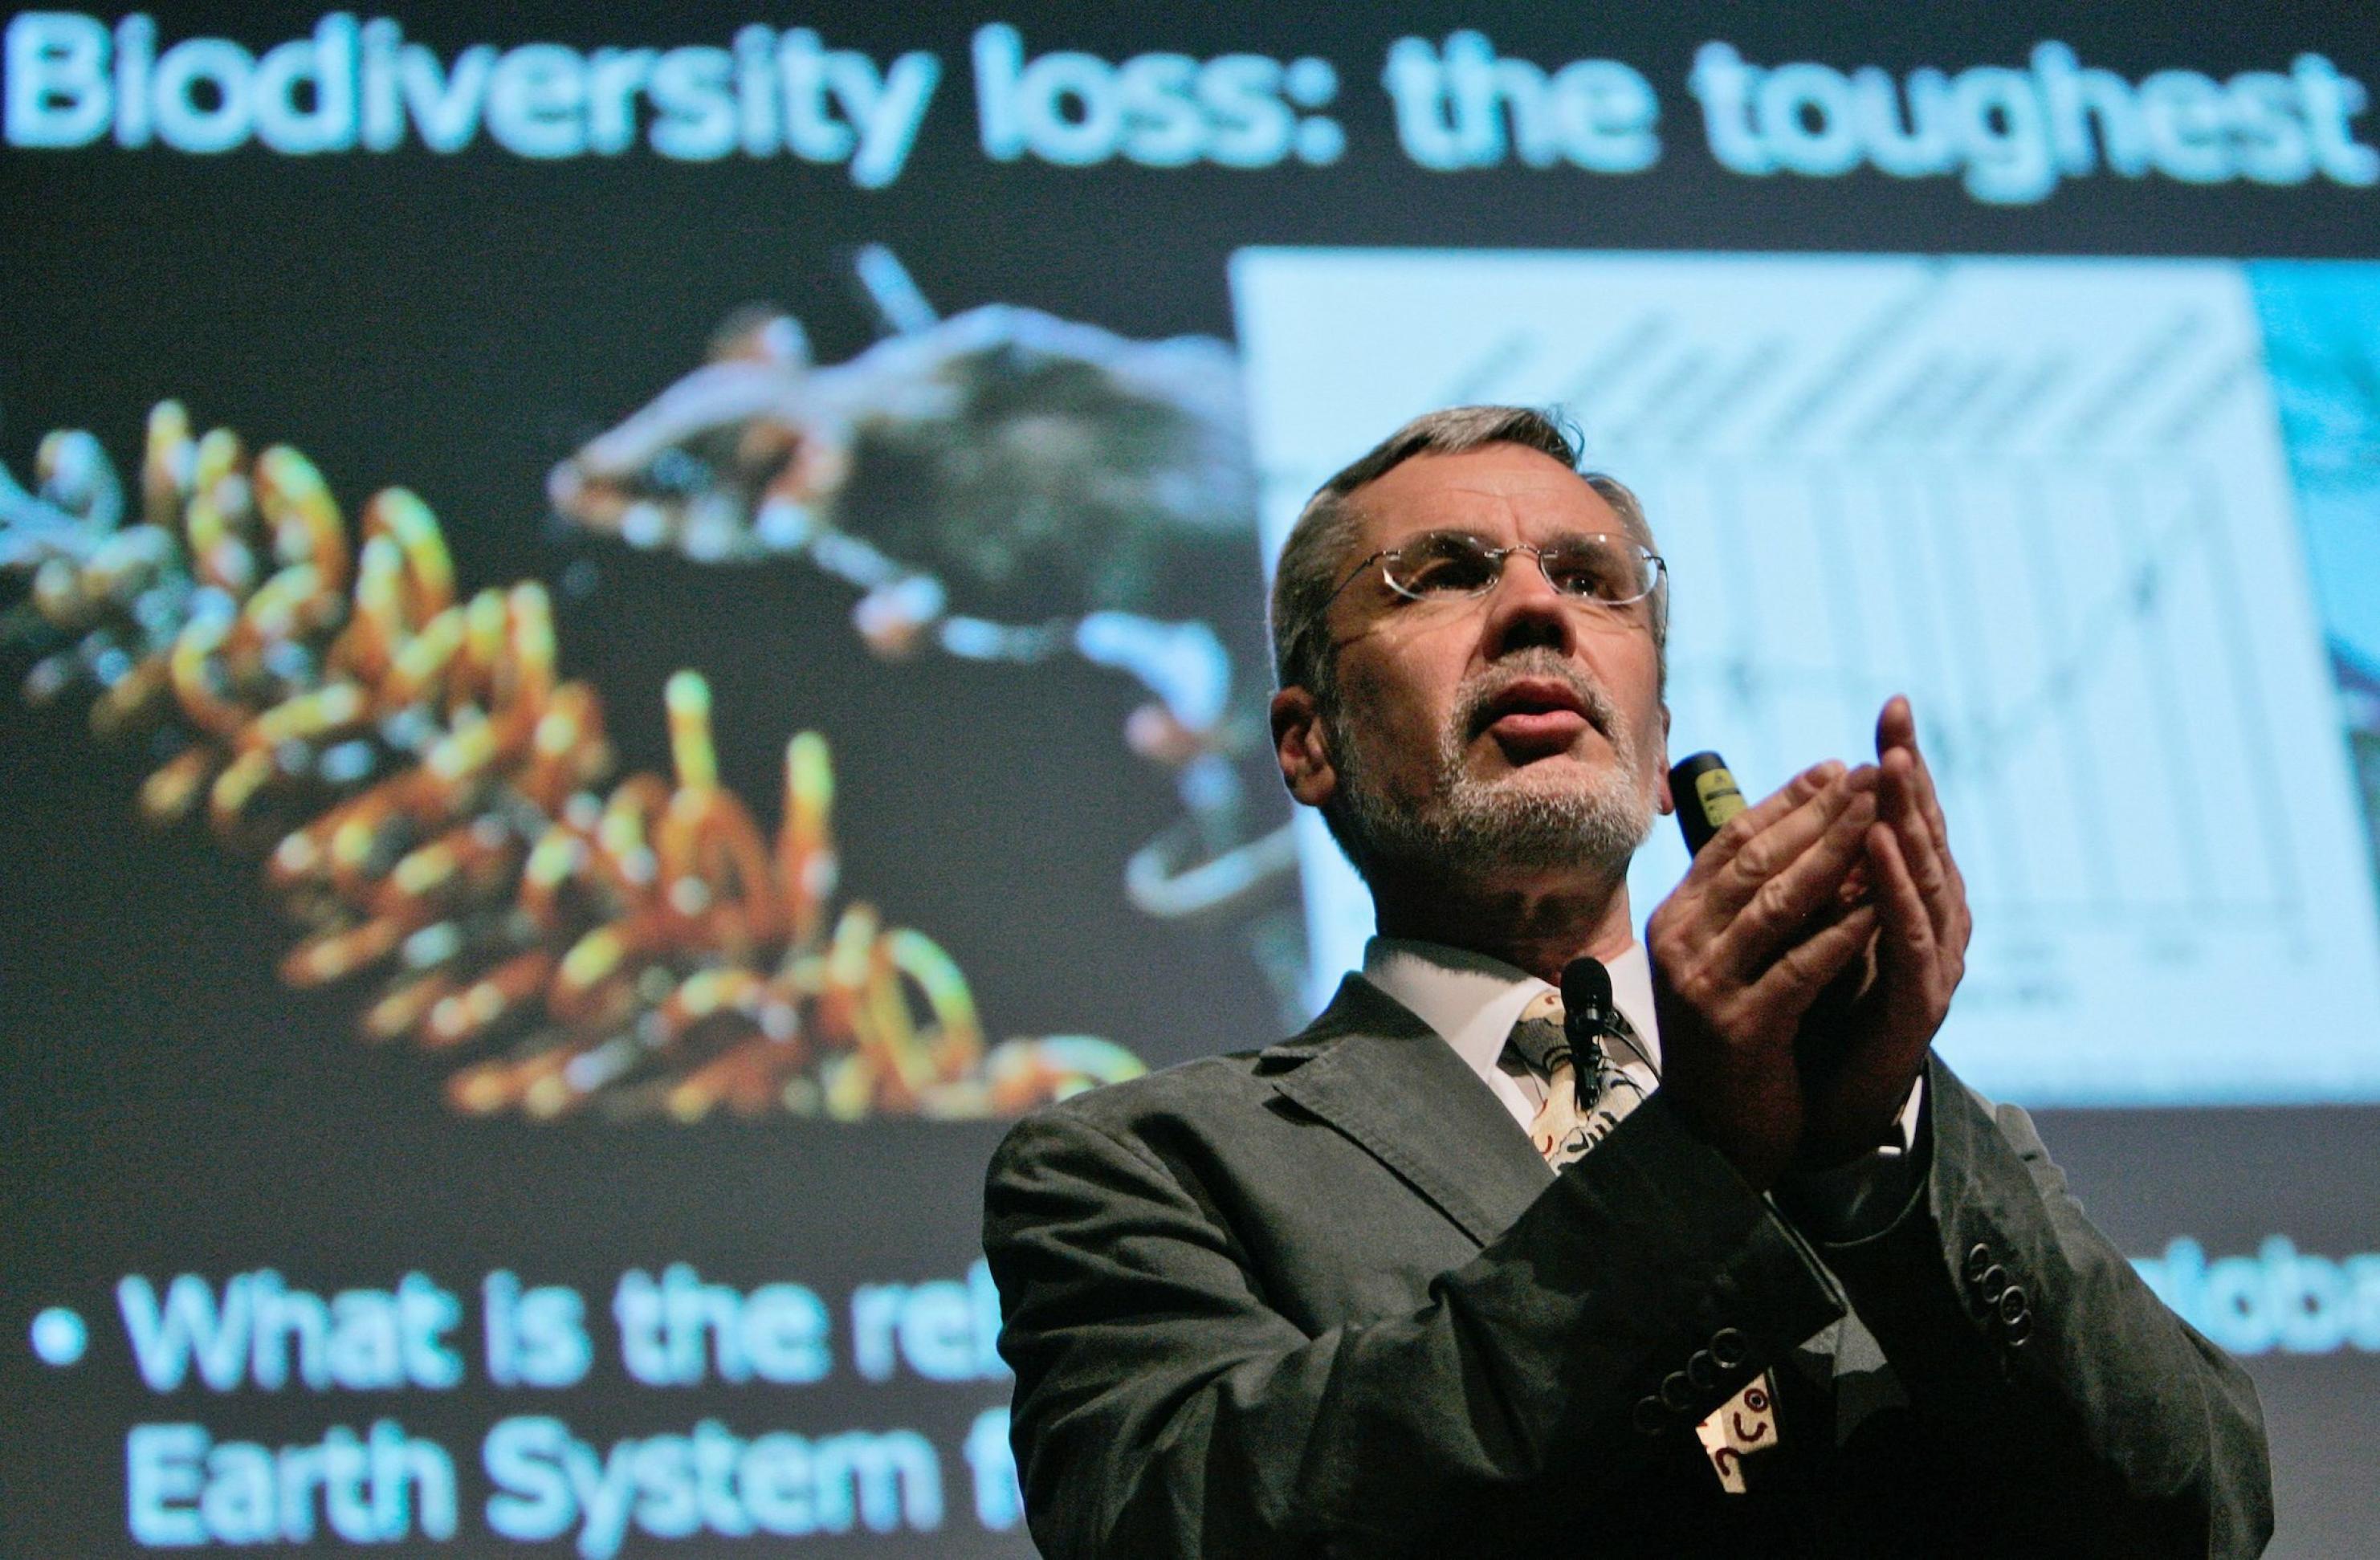 Steffen hat als Redner die Hände gefaltet. Hinter ihm ist eine projizierte Folie zu sehen, auf der das Wort Biodiversität steht.